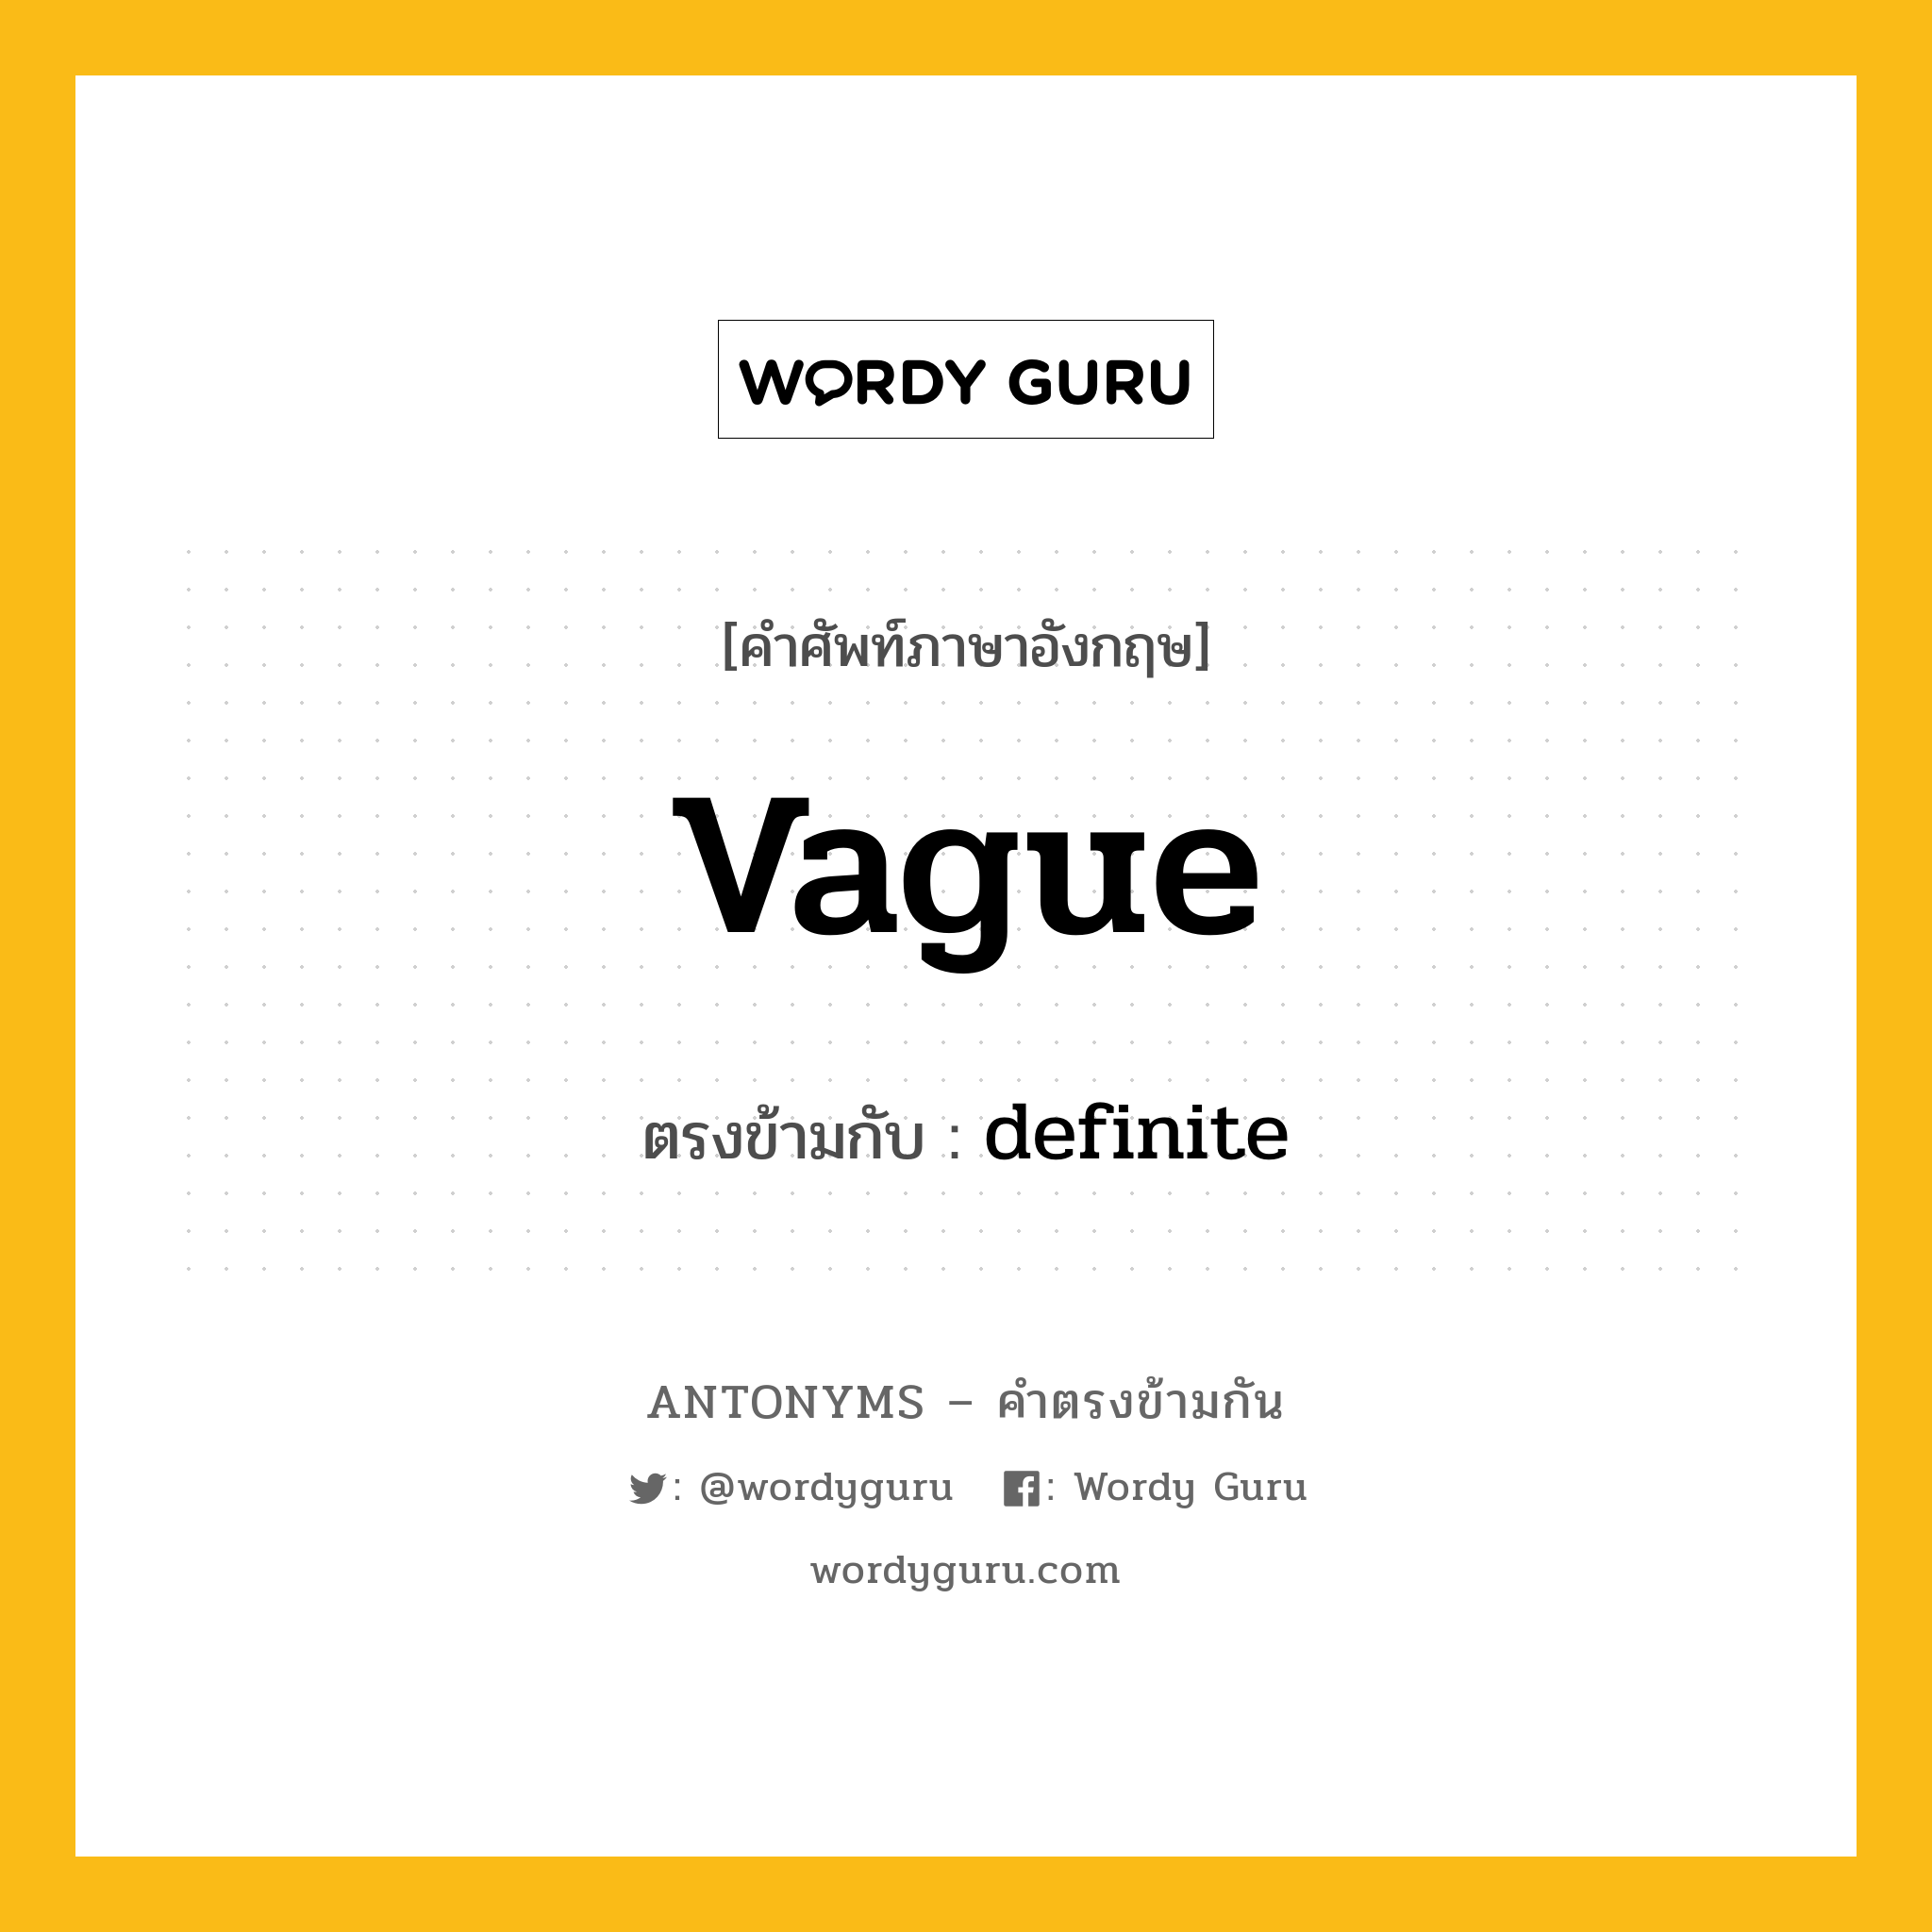 vague เป็นคำตรงข้ามกับคำไหนบ้าง?, คำศัพท์ภาษาอังกฤษ vague ตรงข้ามกับ definite หมวด definite